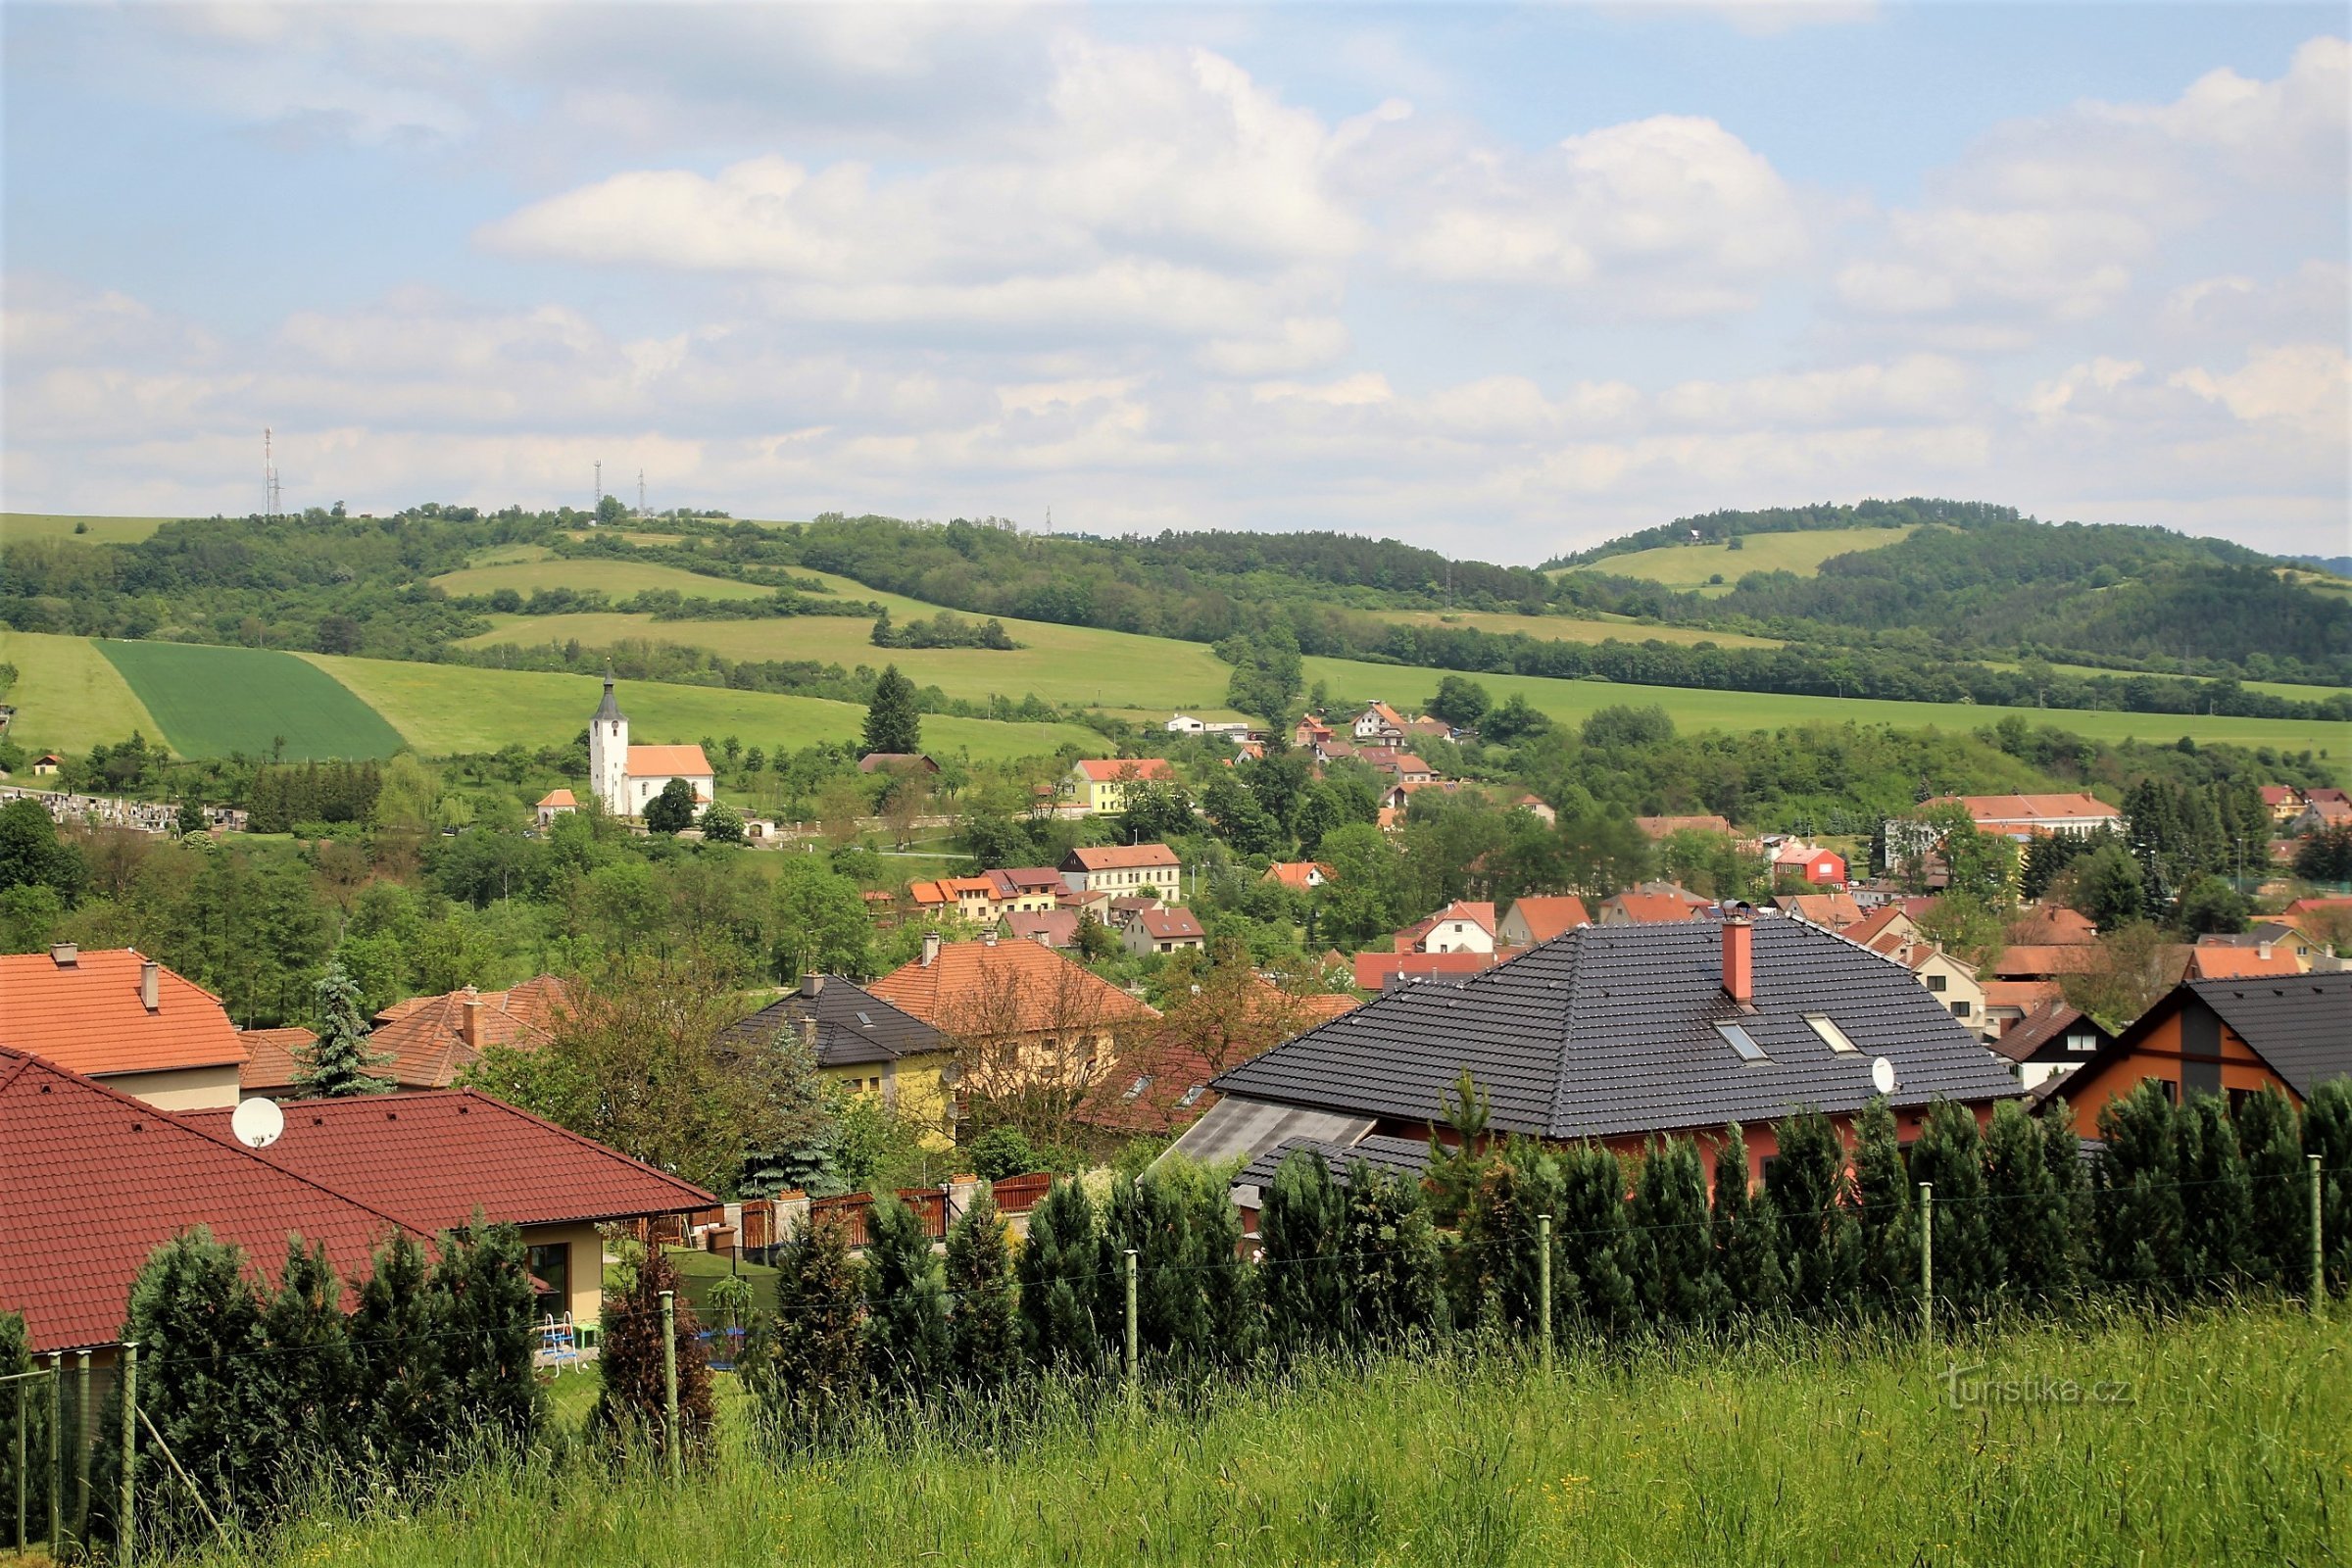 View of Dolní Loučky